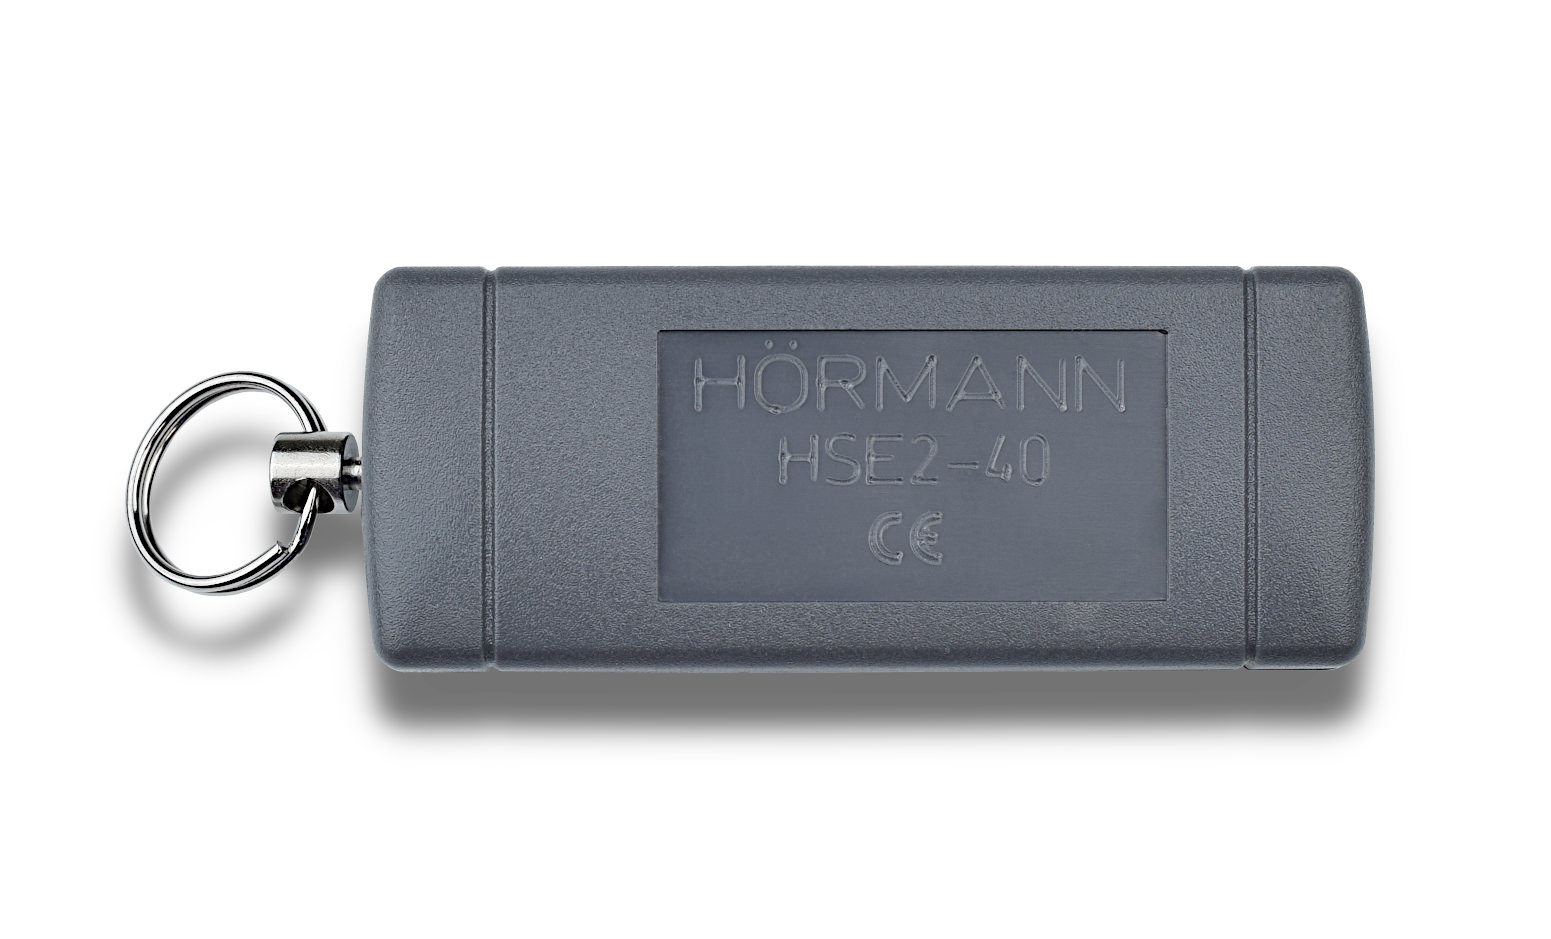 Hörmann Handsender HS2-40 